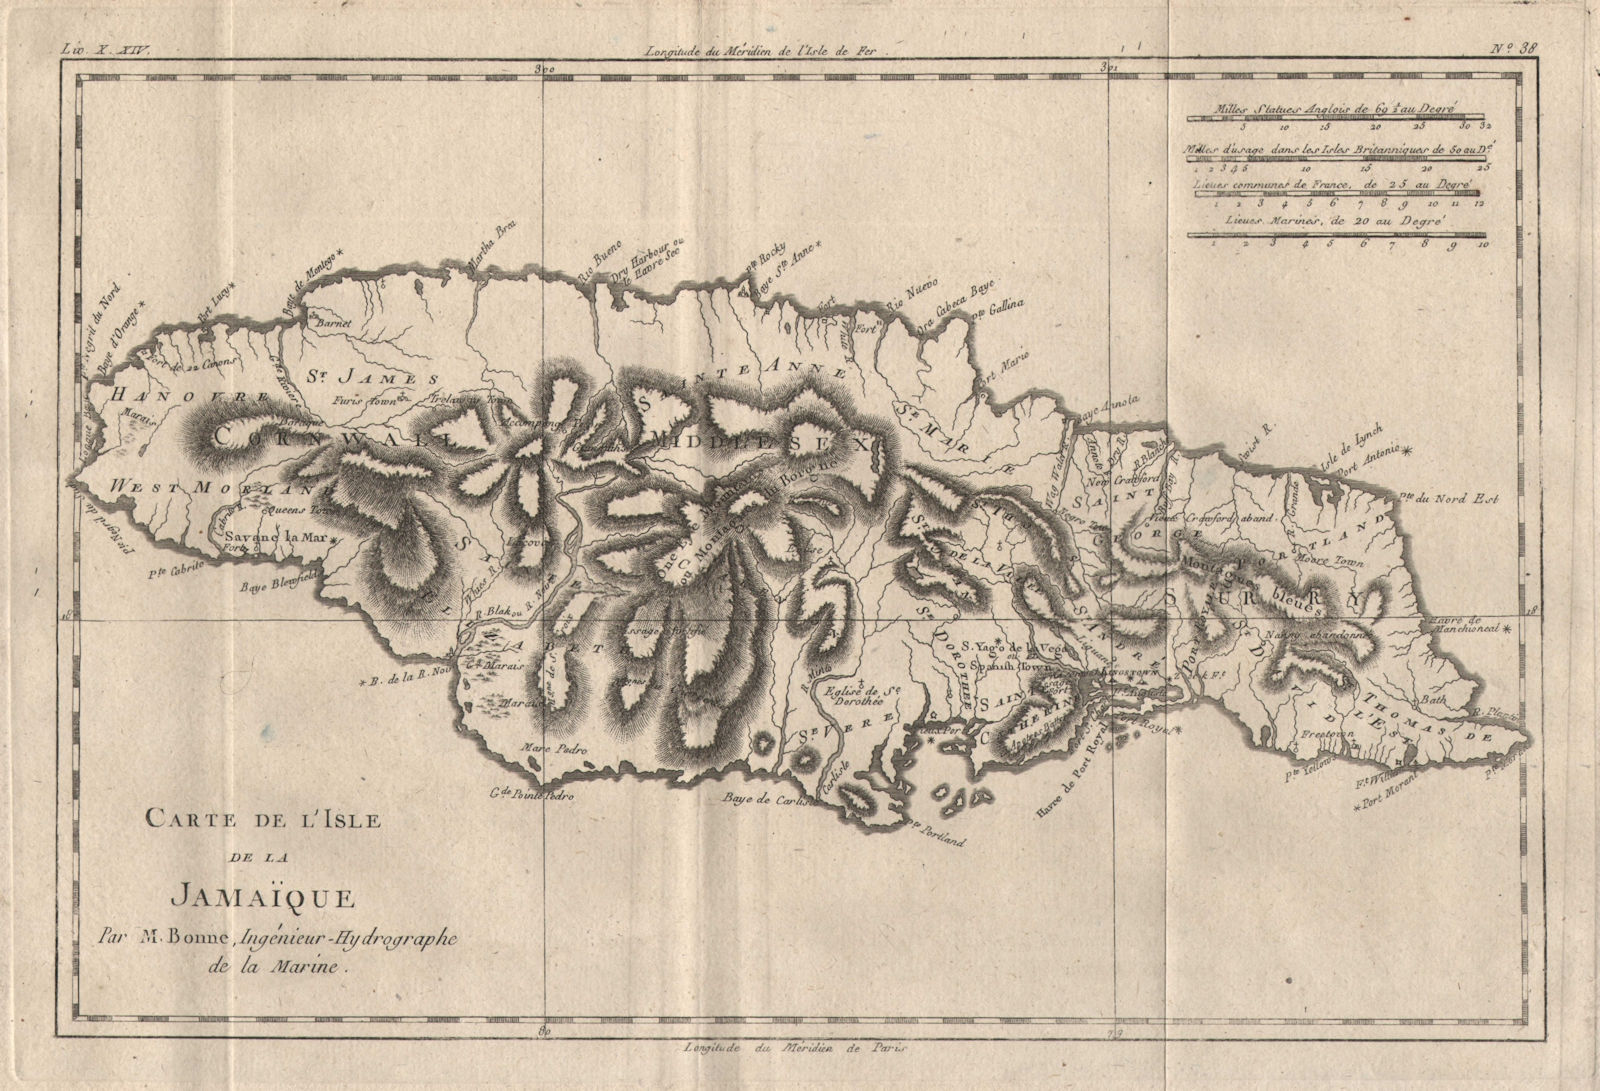 "Carte de l'Isle de la Jamaique". Jamaica. BONNE 1780 old antique map chart